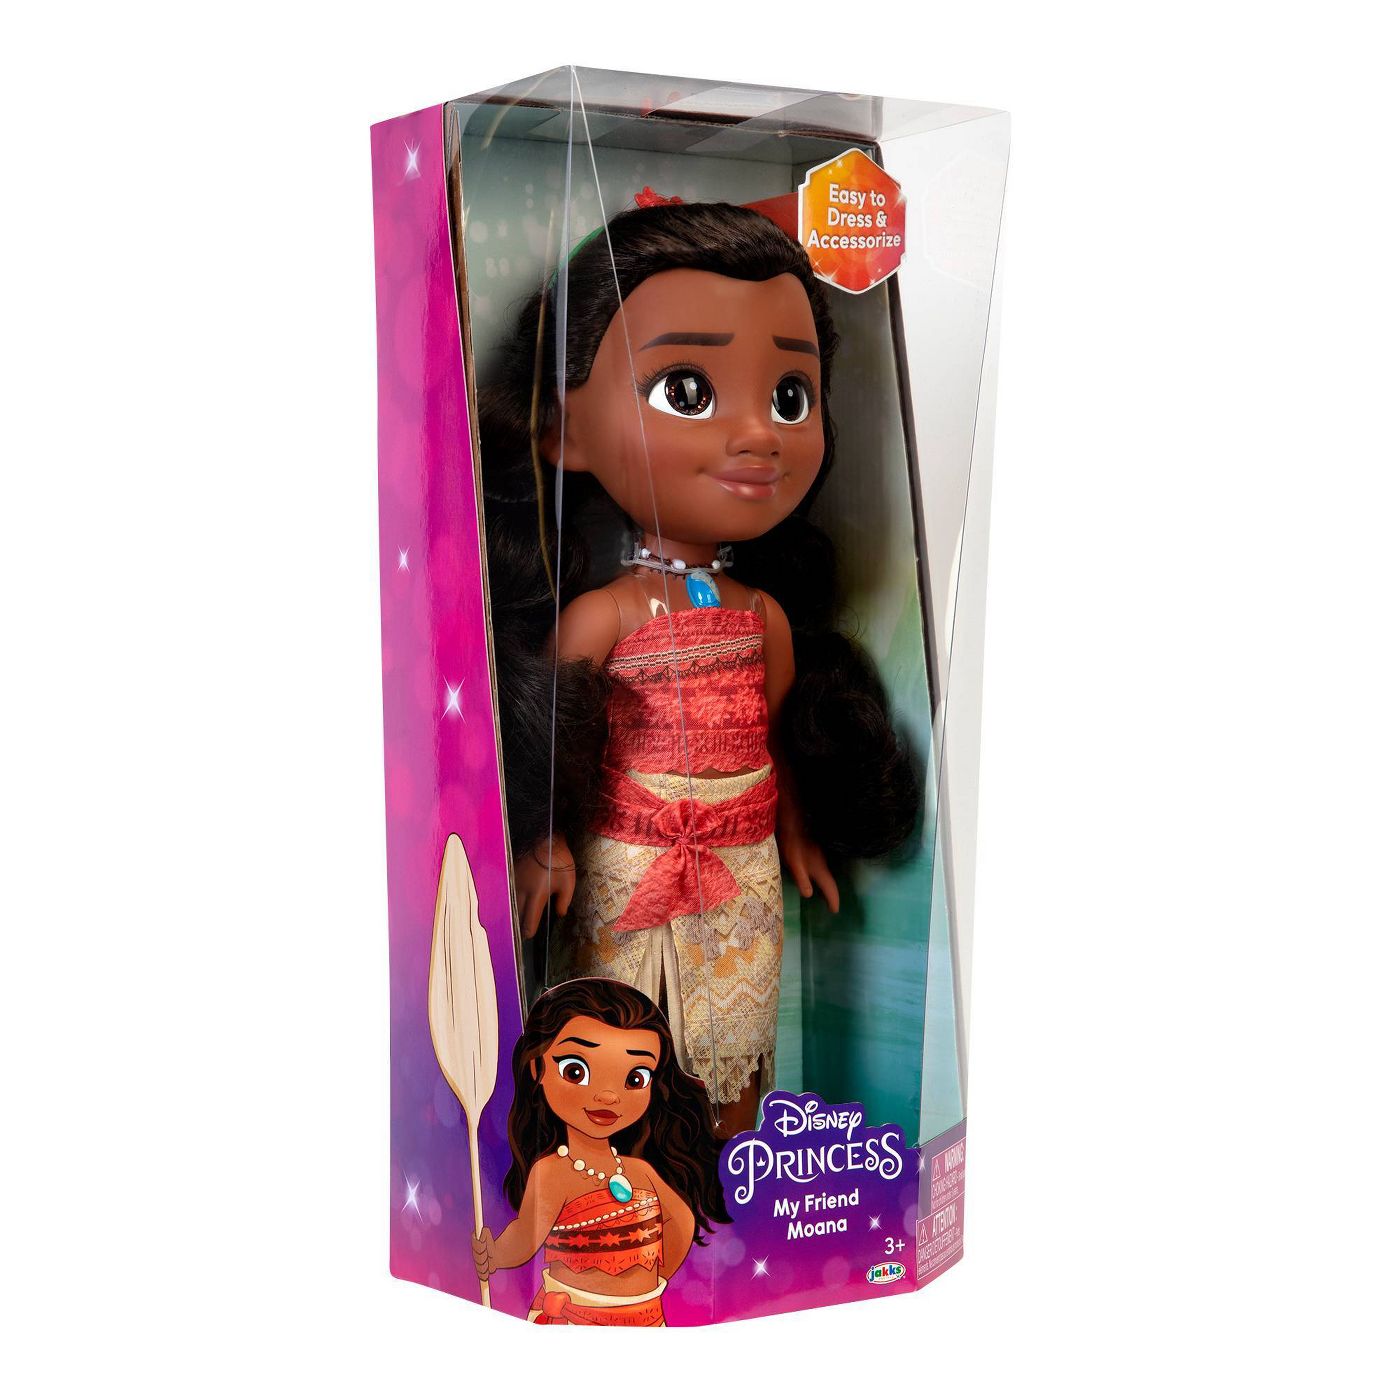 Disney Princess My Friend Moana Doll New with Box